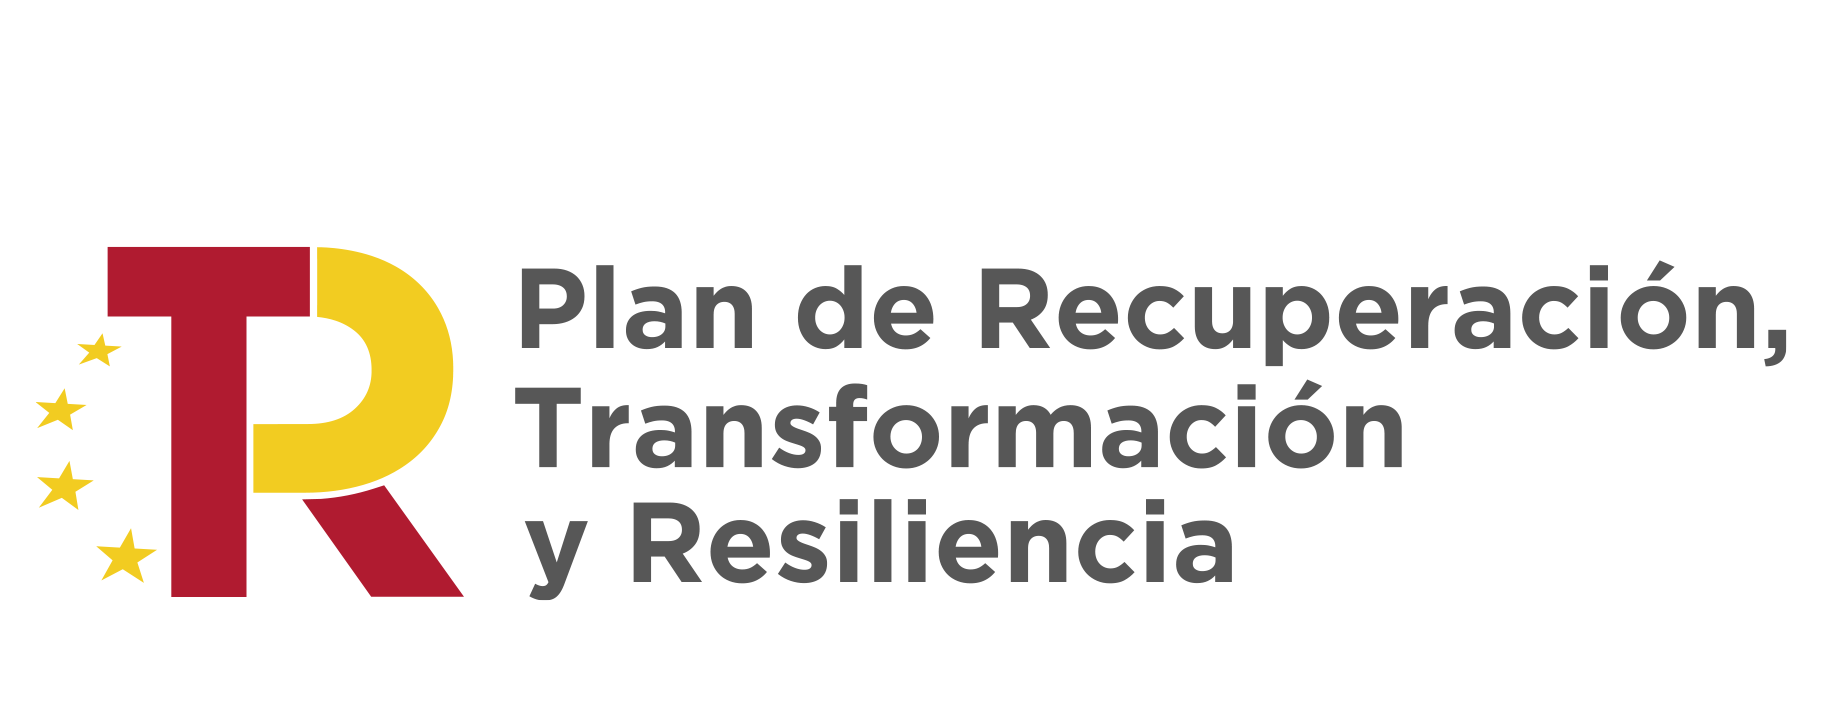 Logotipo 'Plan de recuperación, transformación y resiliencia'